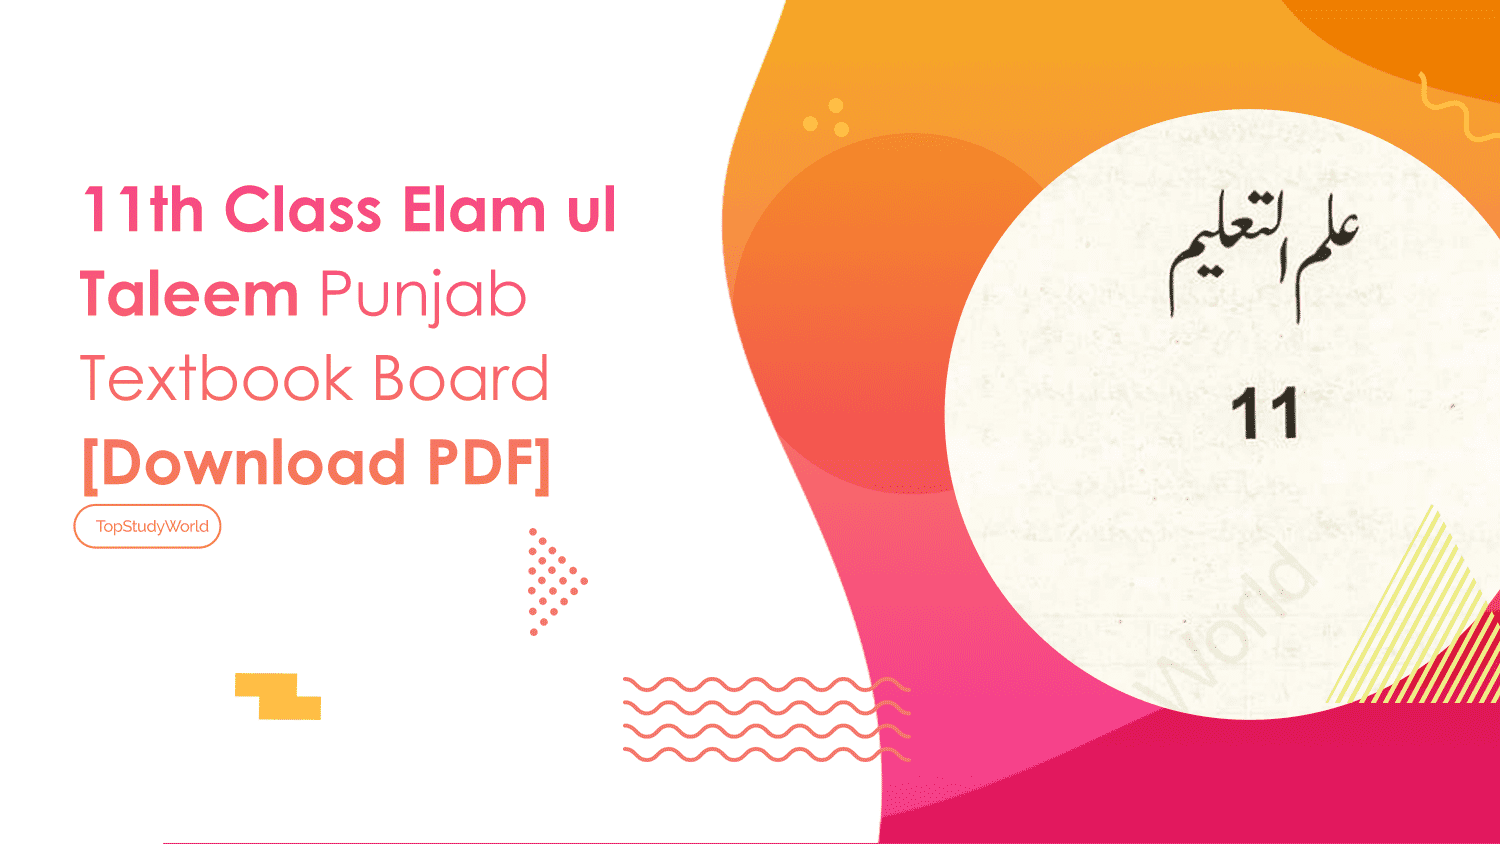 11th Class Elam ul Taleem Punjab Textbook Board [Download PDF]